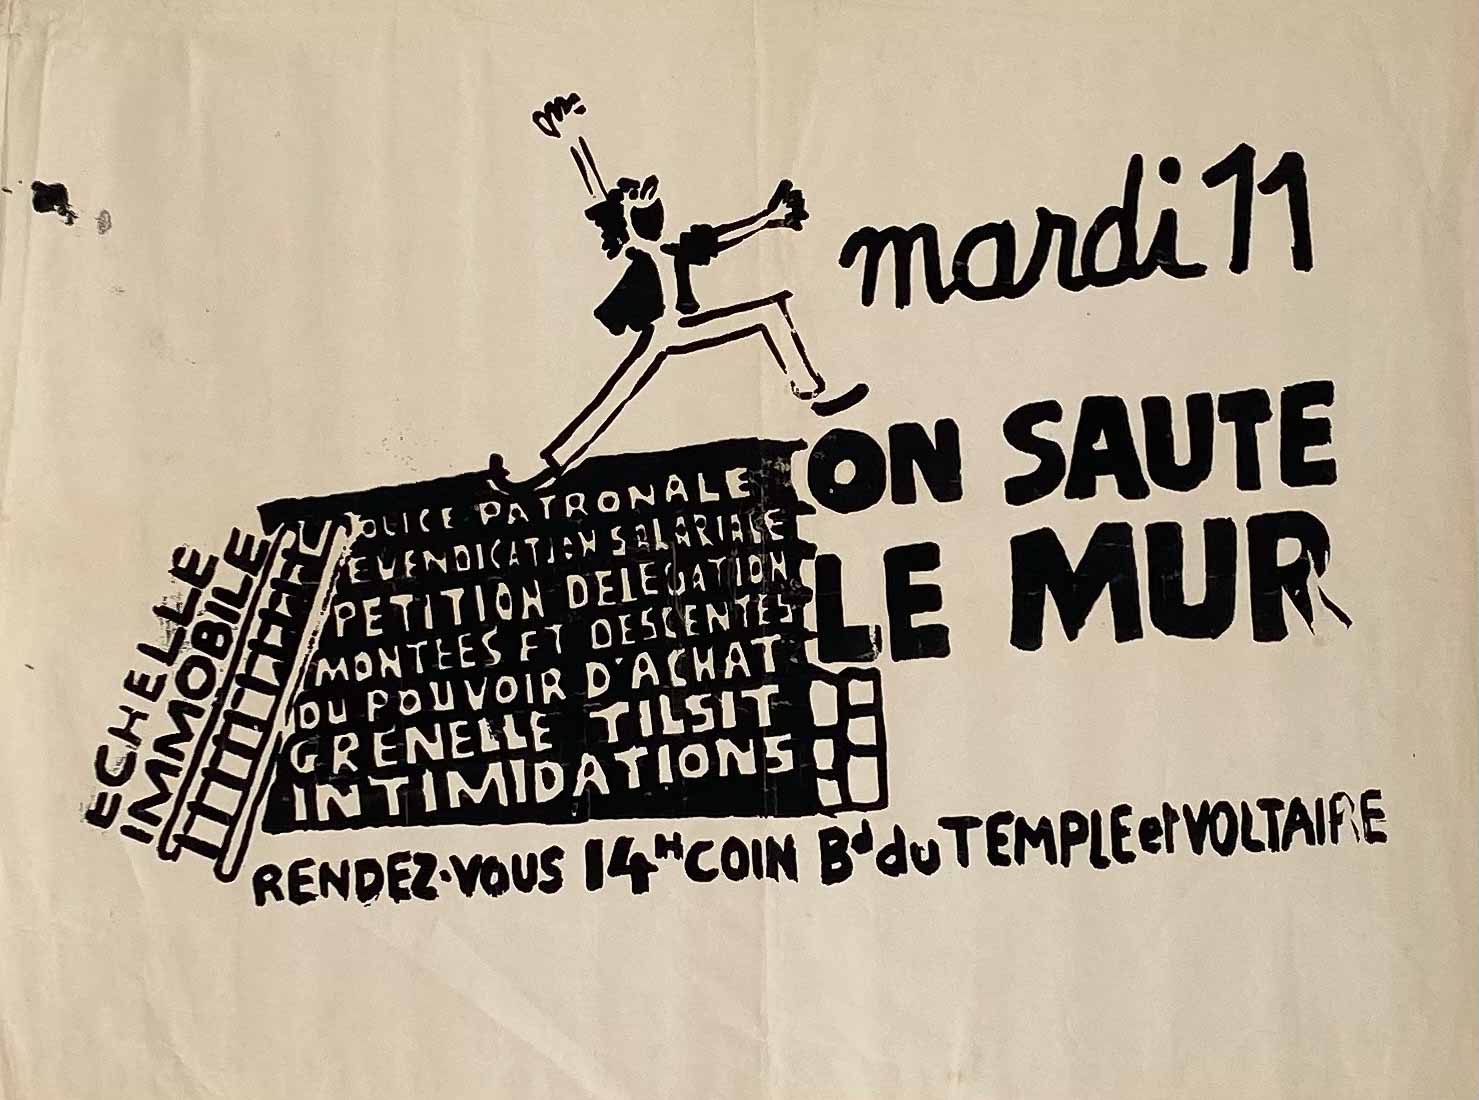 Affiche Mai 68 on saute le mur mardi 11 Rendez-vous 14h coin Bd du Temple et Voltaire